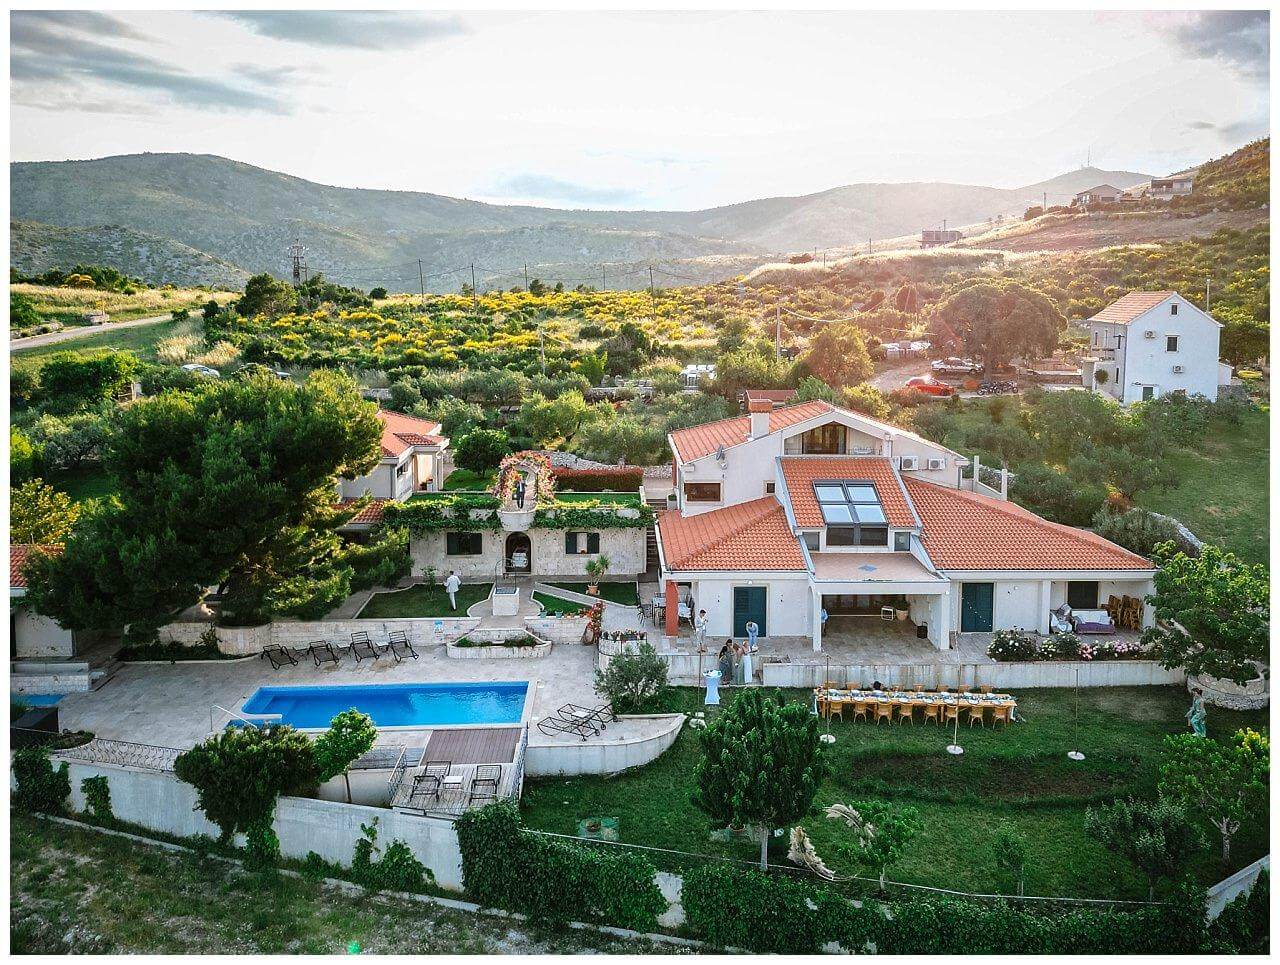 Private Villa in der Natur mit Pool bei einer Hochzeit in Istrien Kroatien